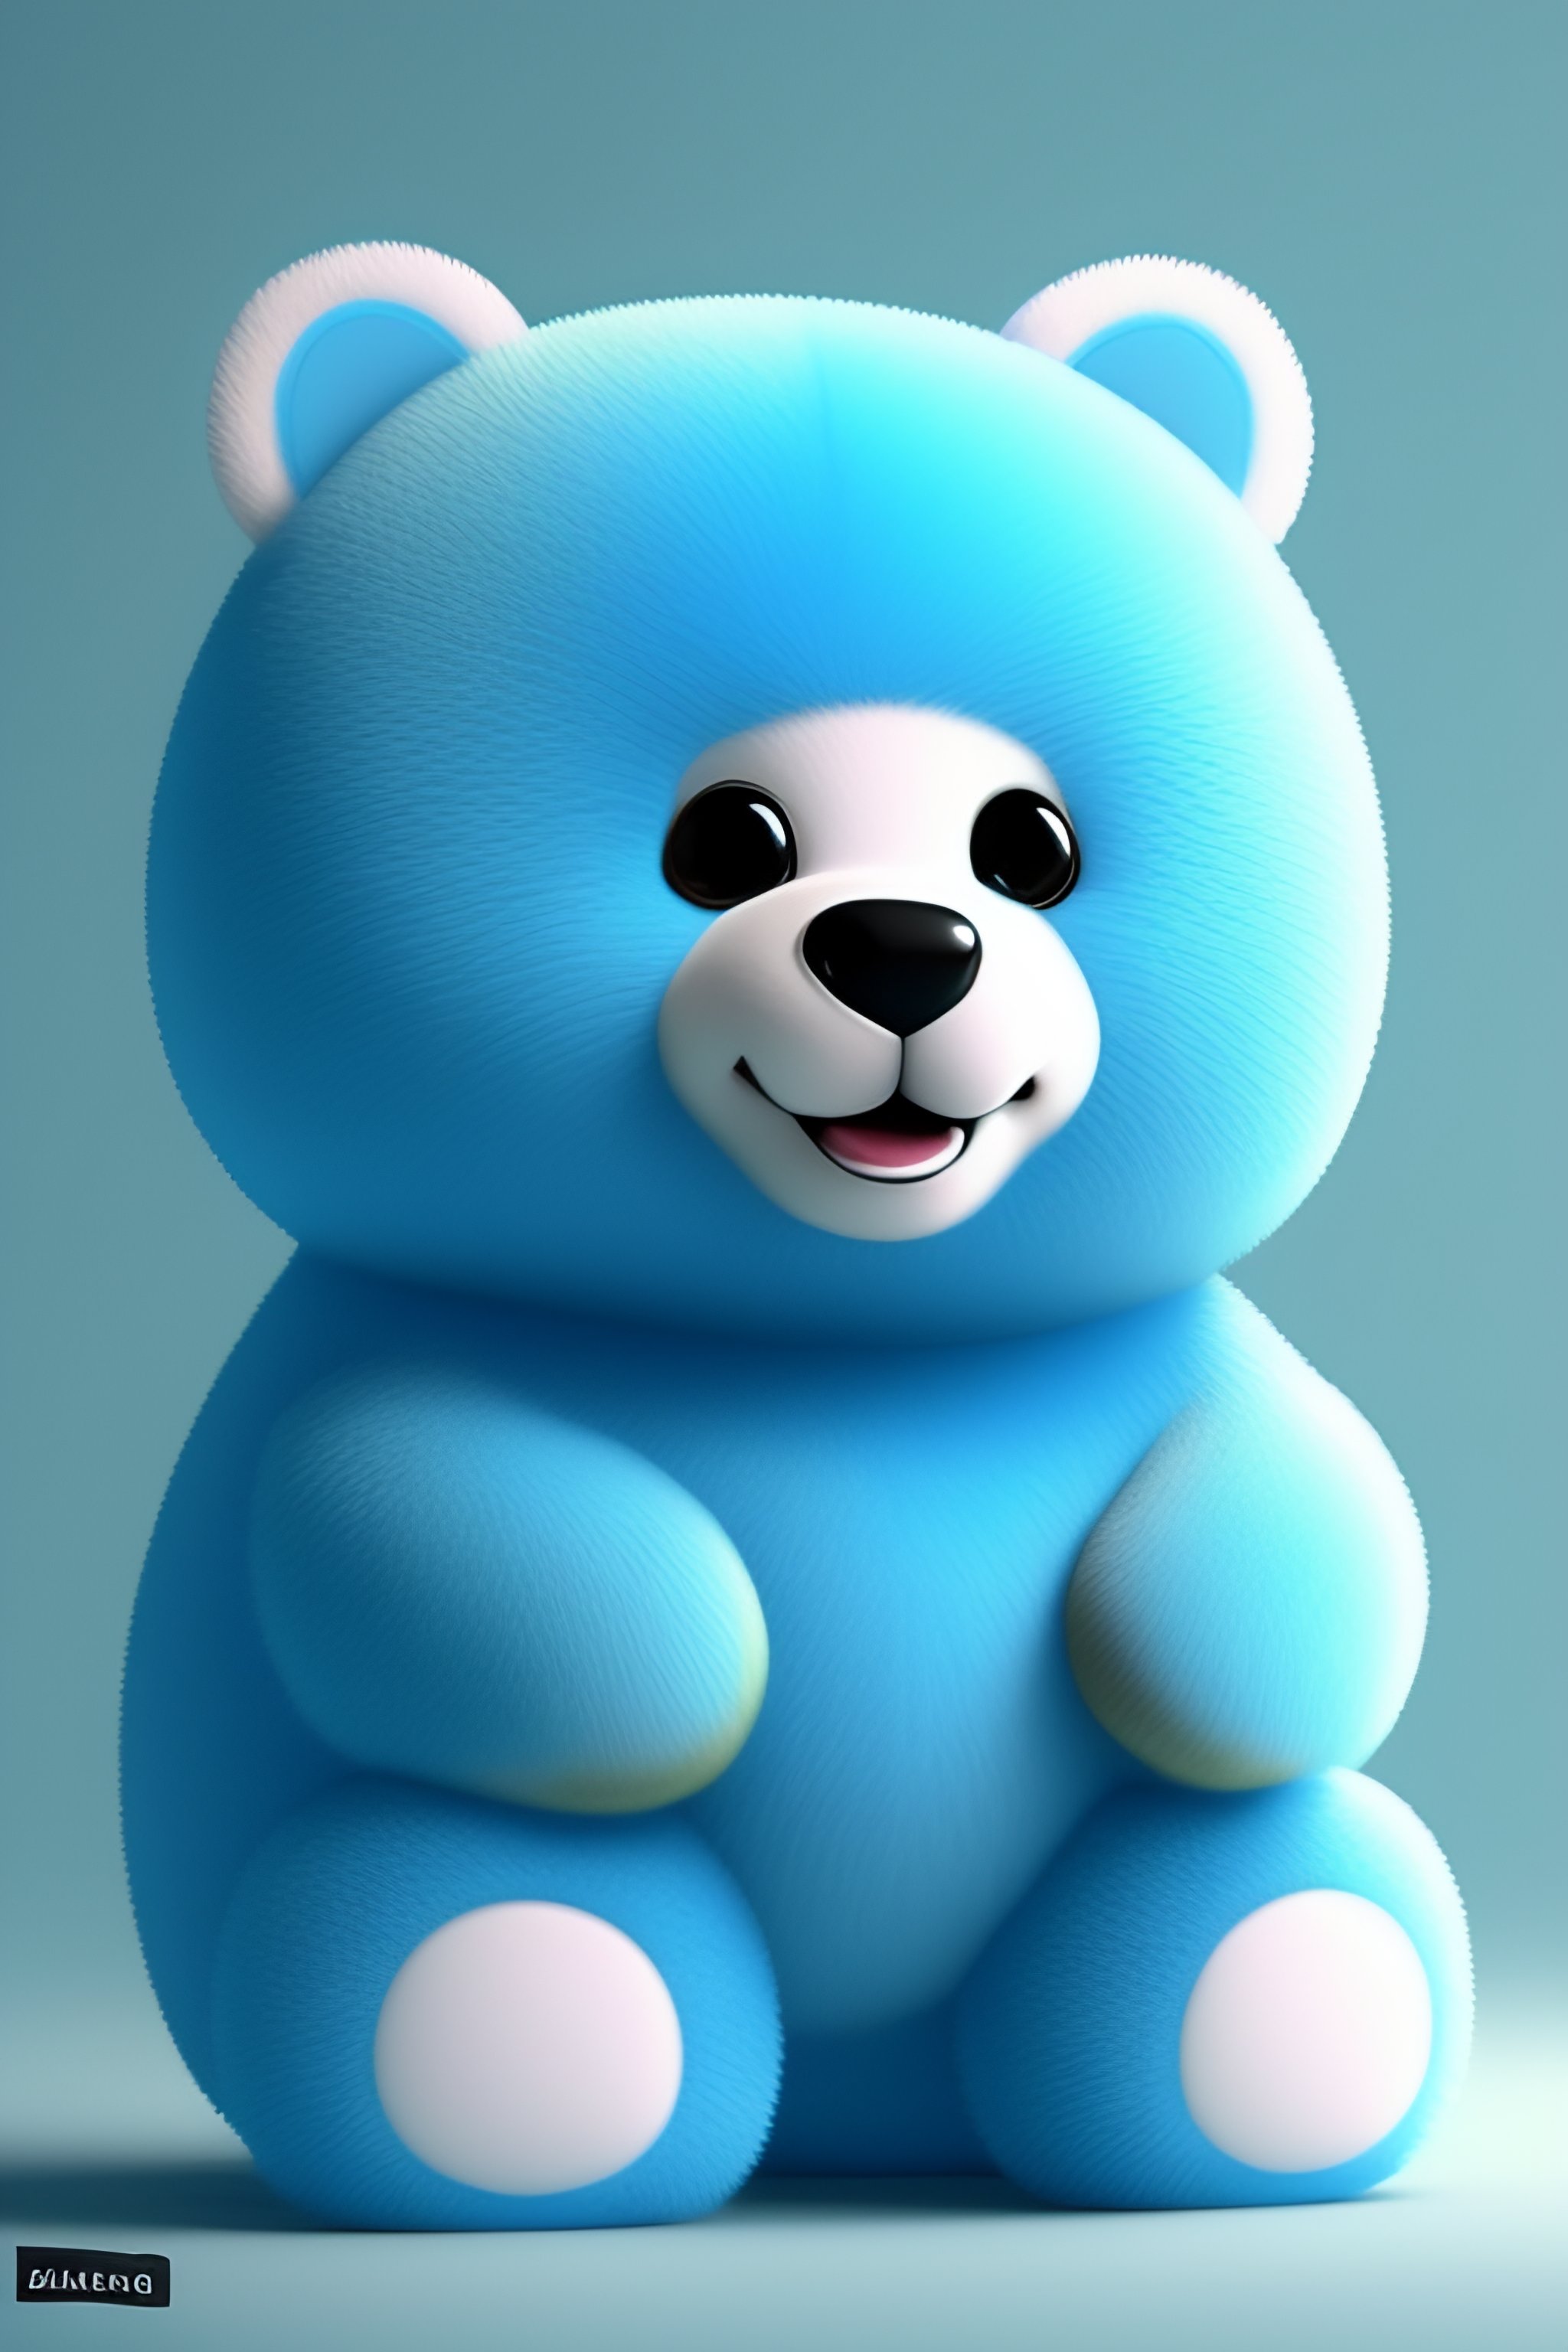 Barnoo gấu xanh dễ thương sẽ mang đến cho bạn một trải nghiệm thật ấn tượng và độc đáo. Bạn sẽ không bao giờ nhìn thấy một chú gấu xanh đáng yêu như thế này nếu không xem qua bức ảnh này.